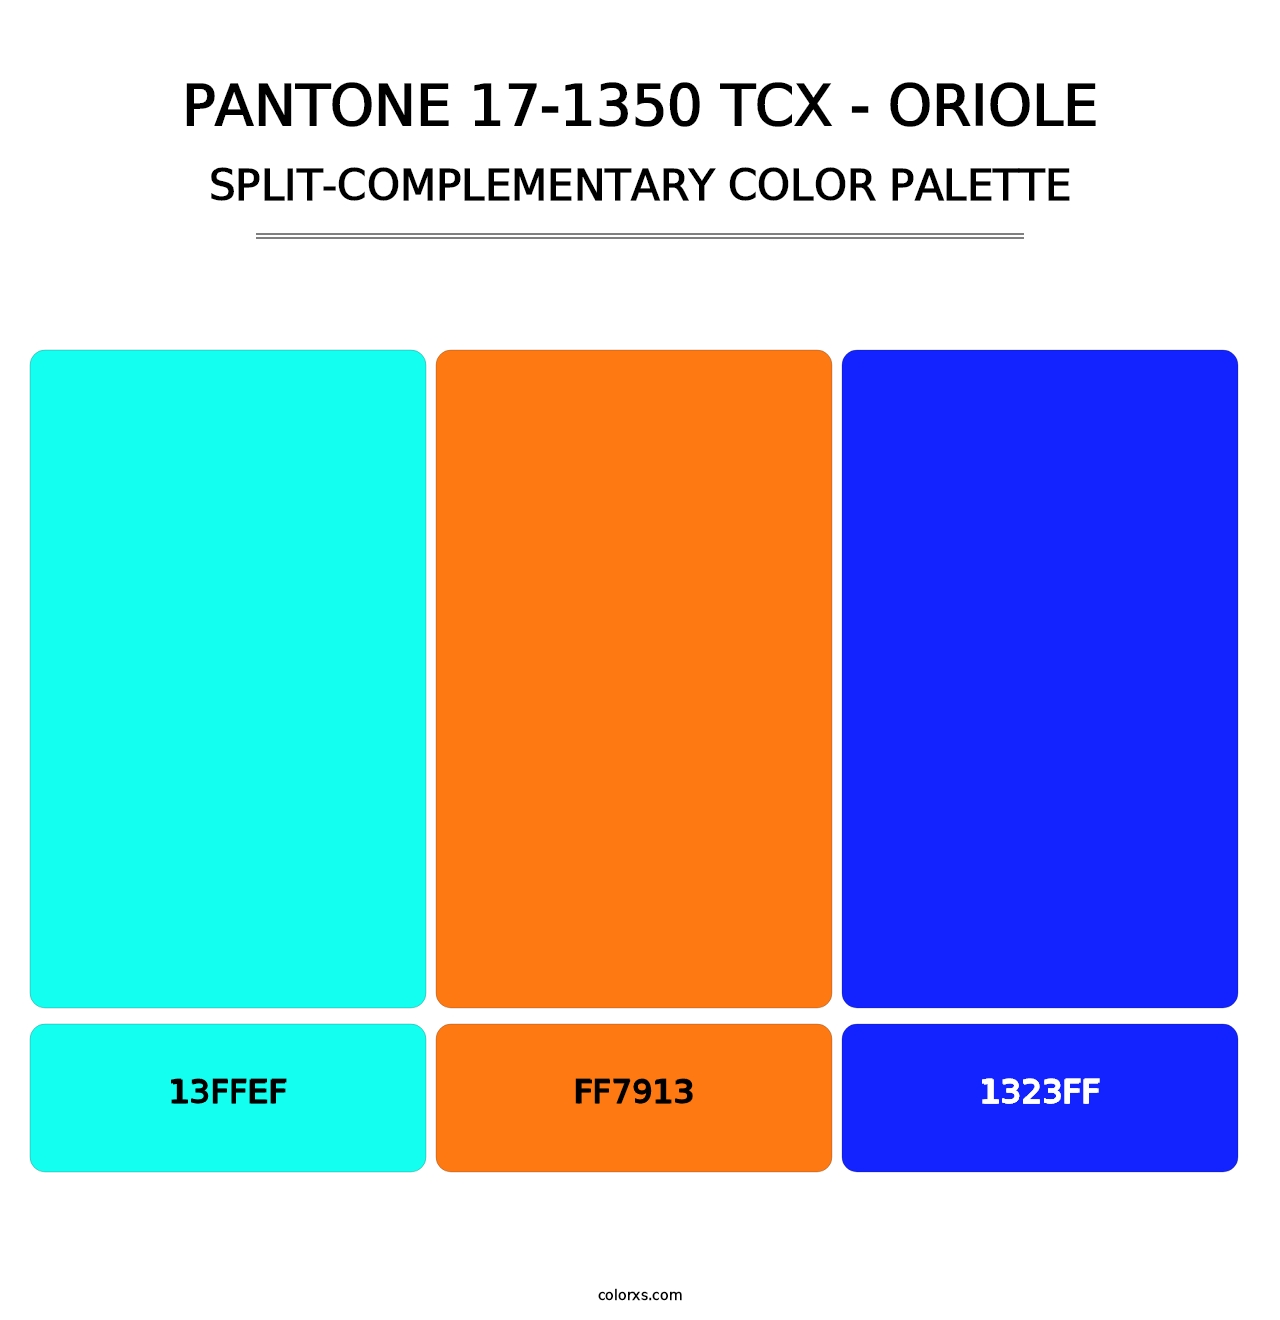 PANTONE 17-1350 TCX - Oriole - Split-Complementary Color Palette